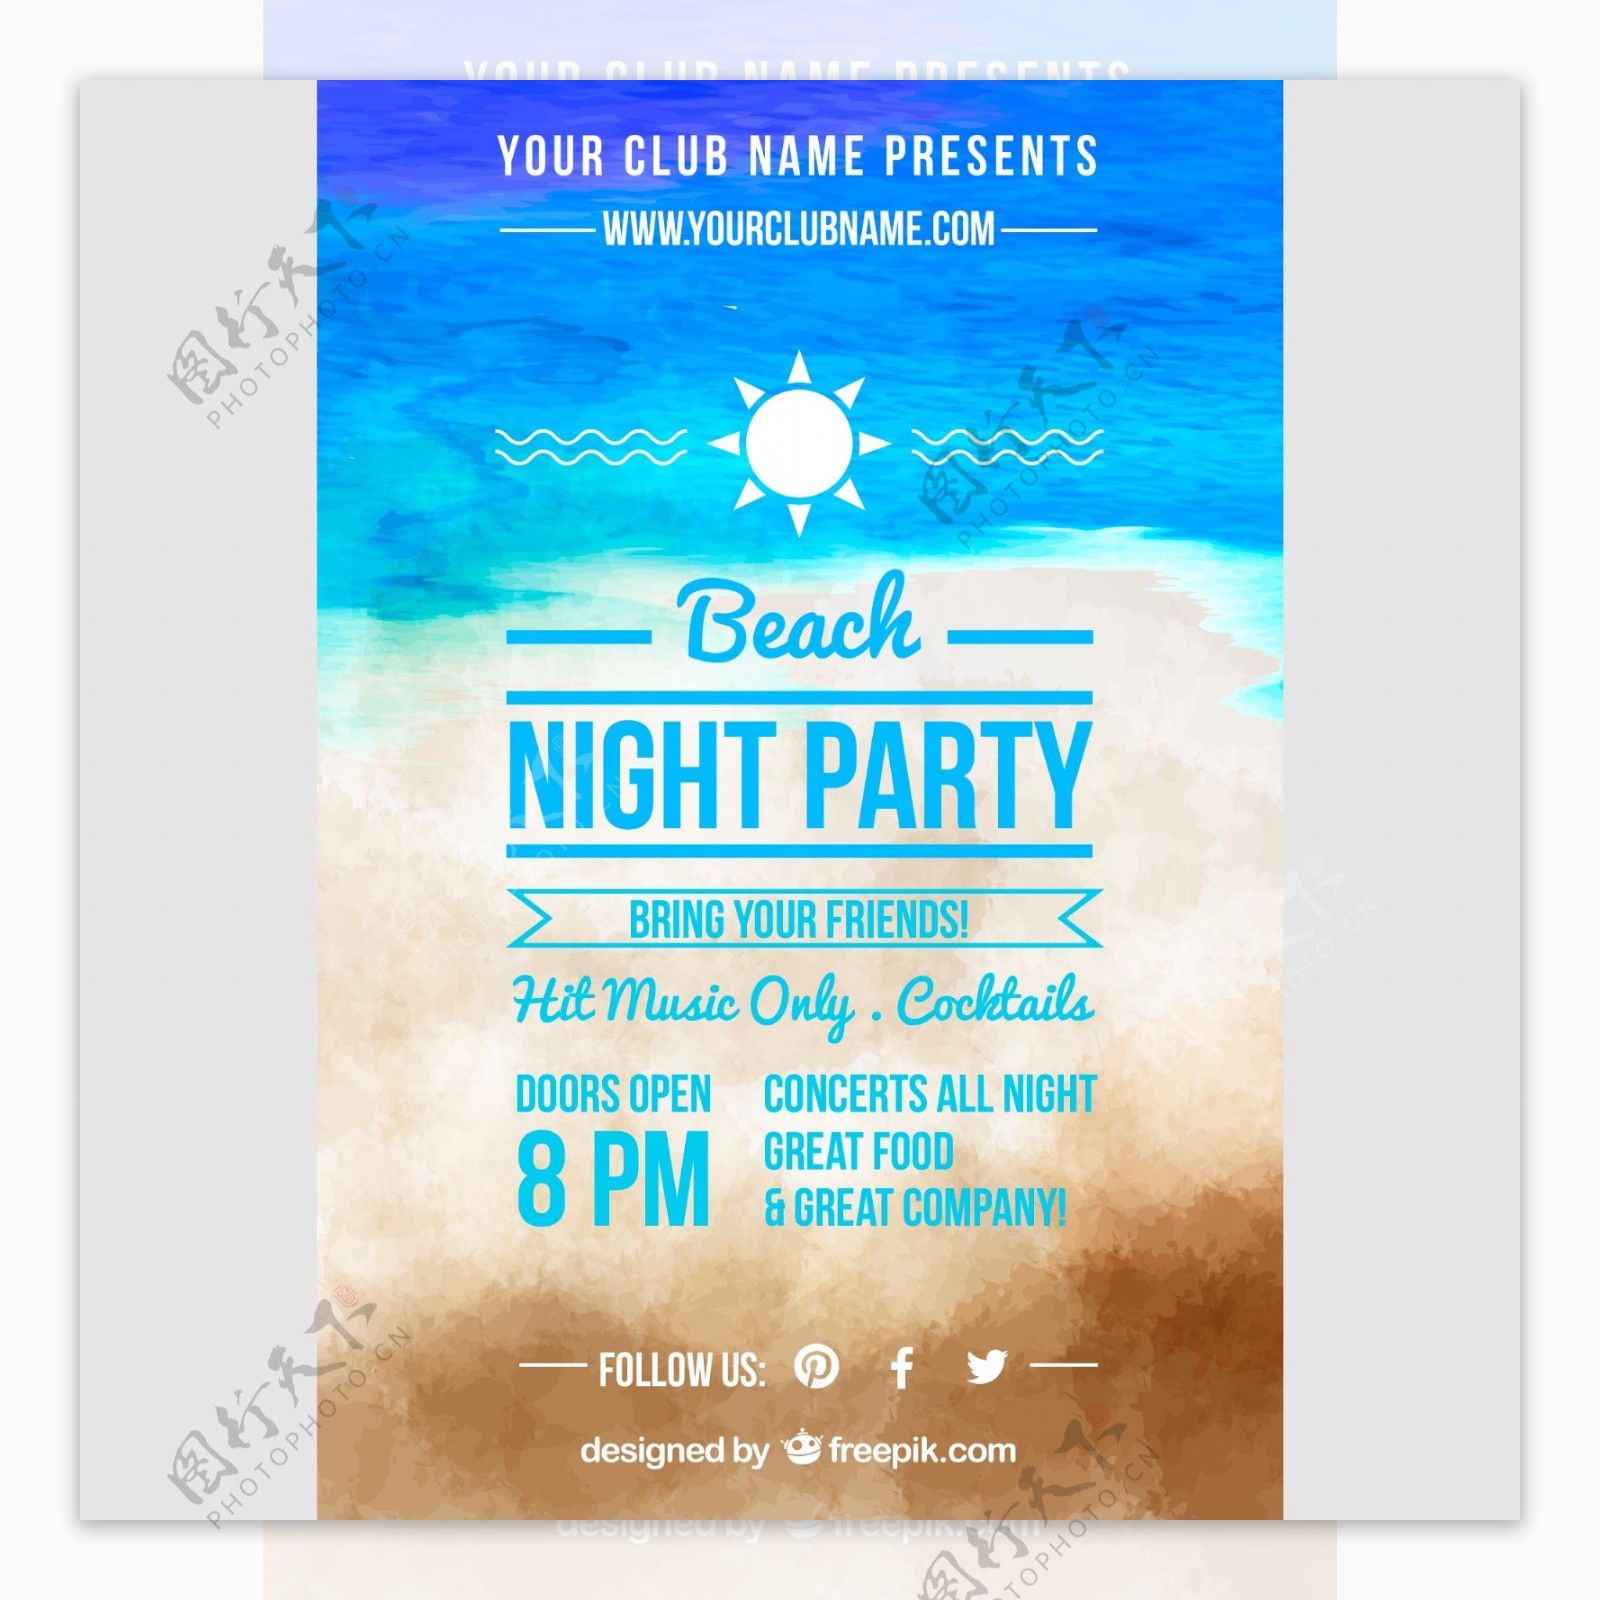 水彩绘沙滩派对海报